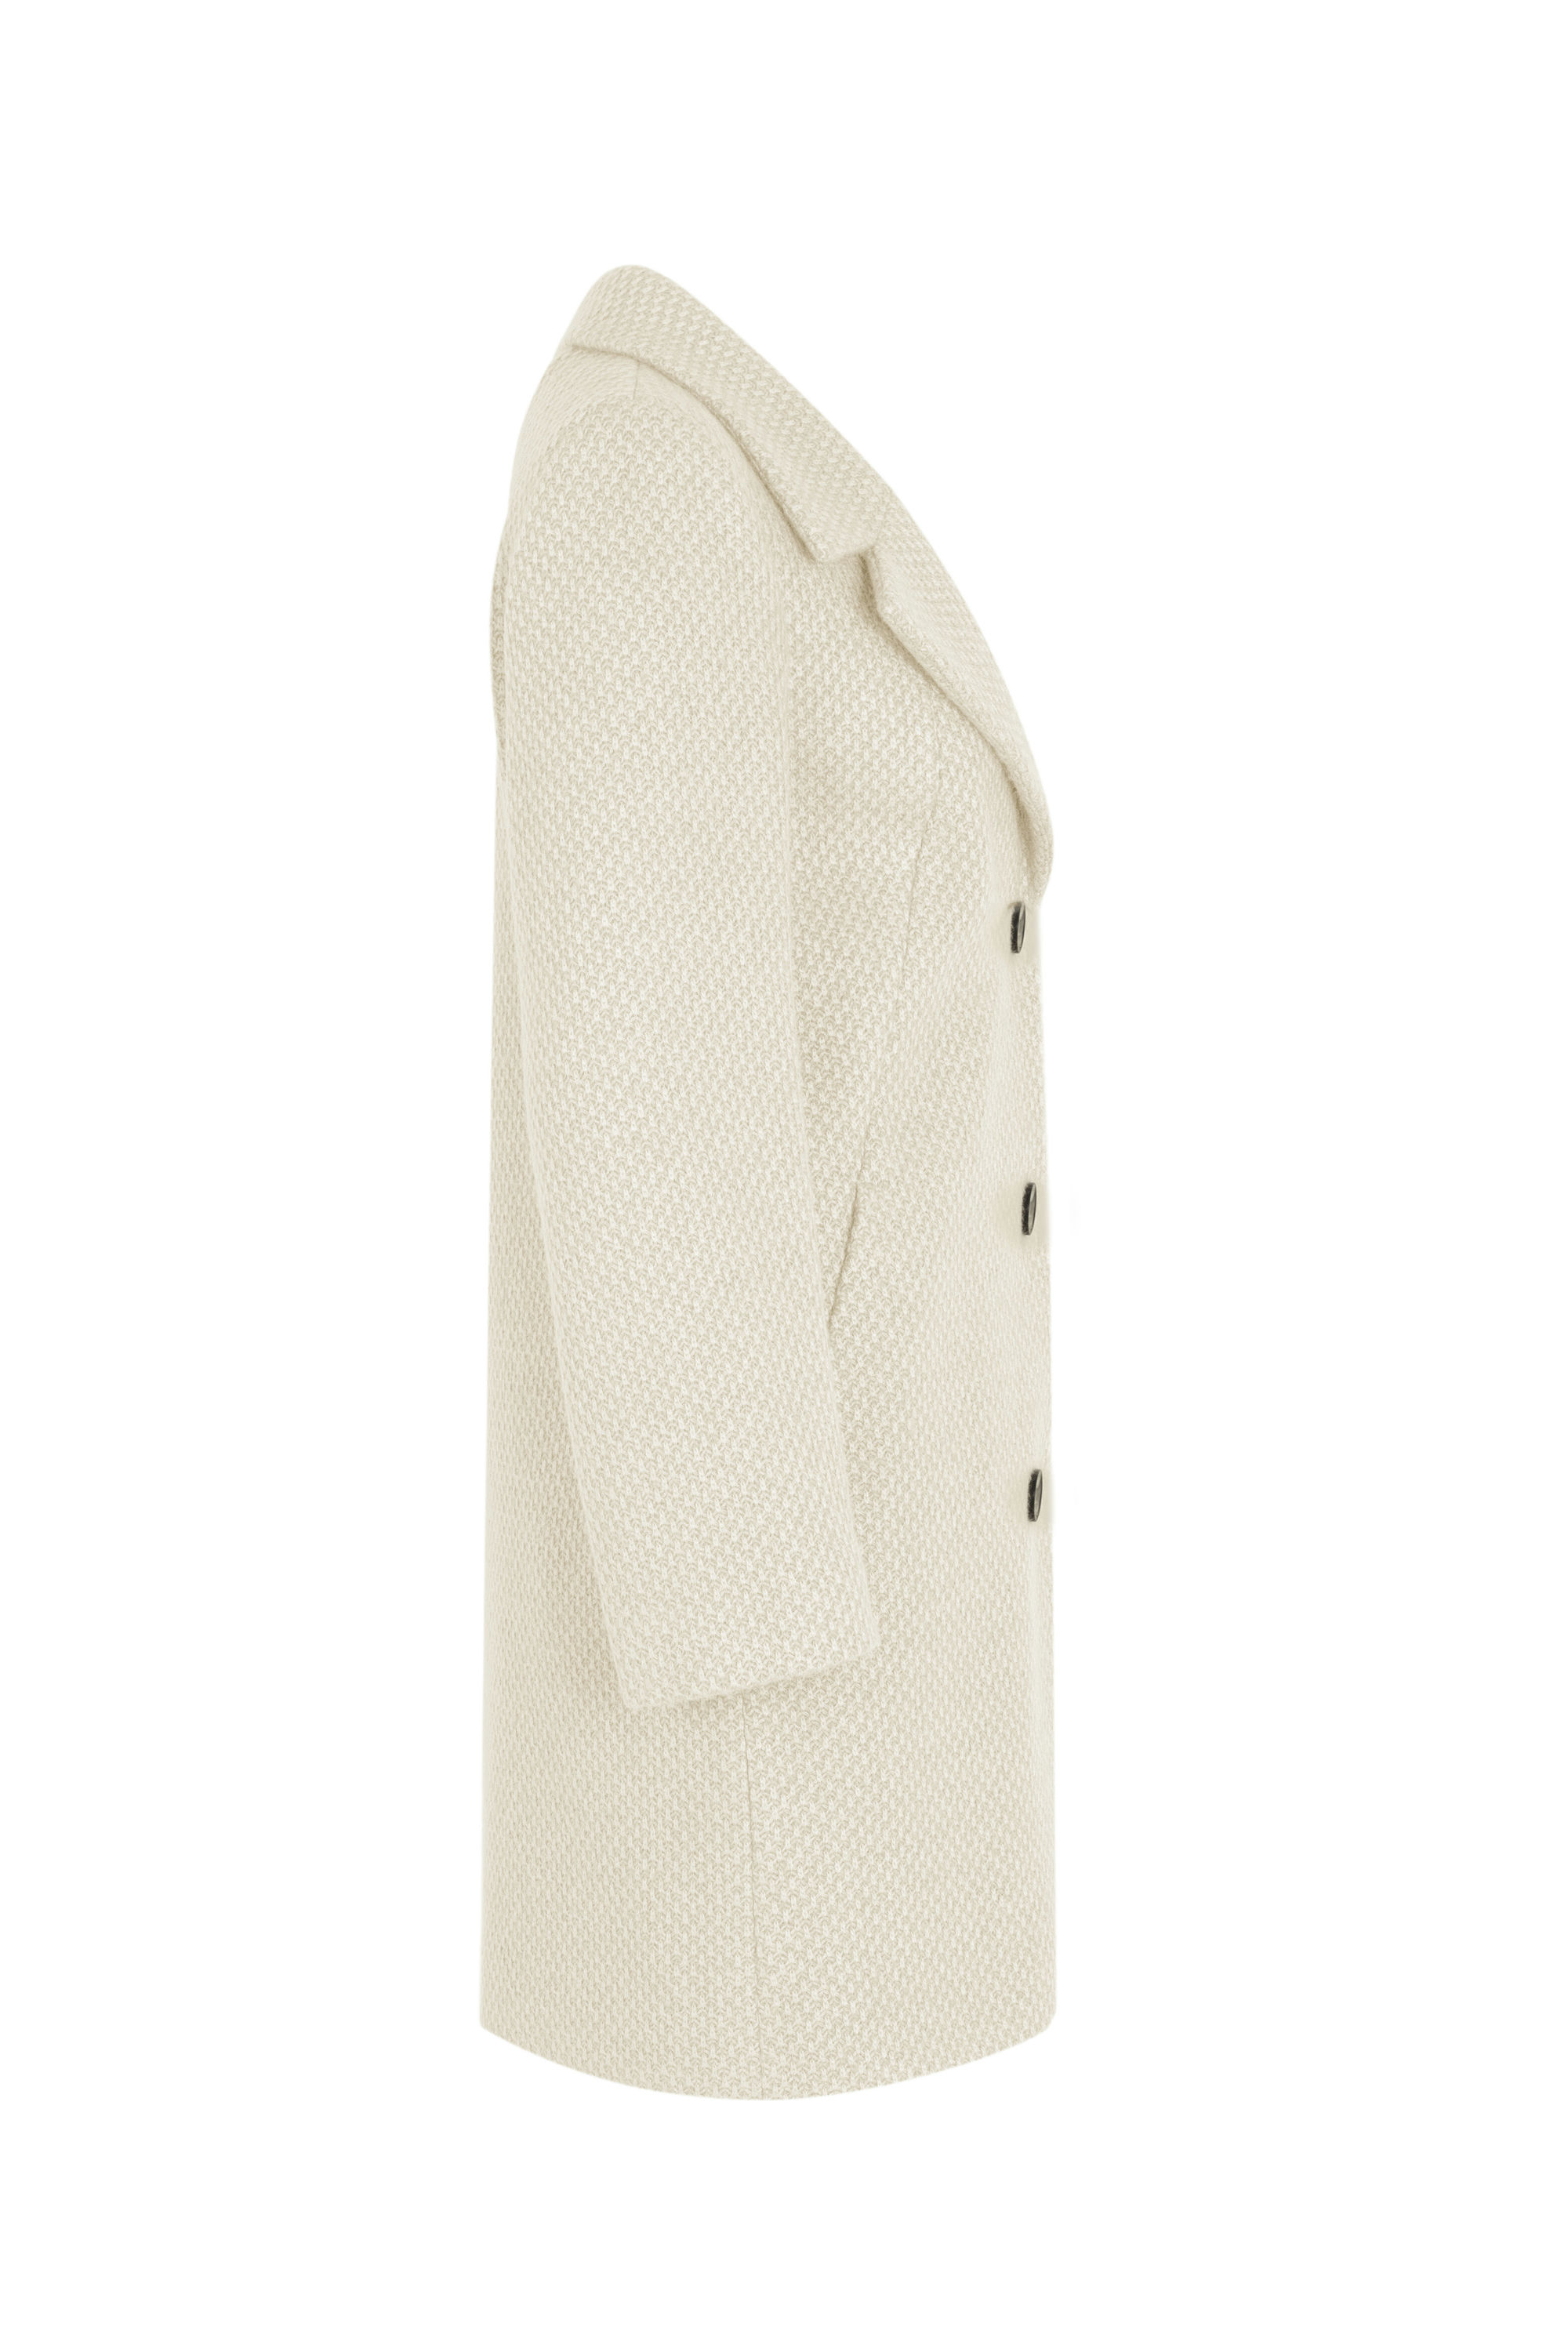 Пальто женское демисезонное 1-13042-1